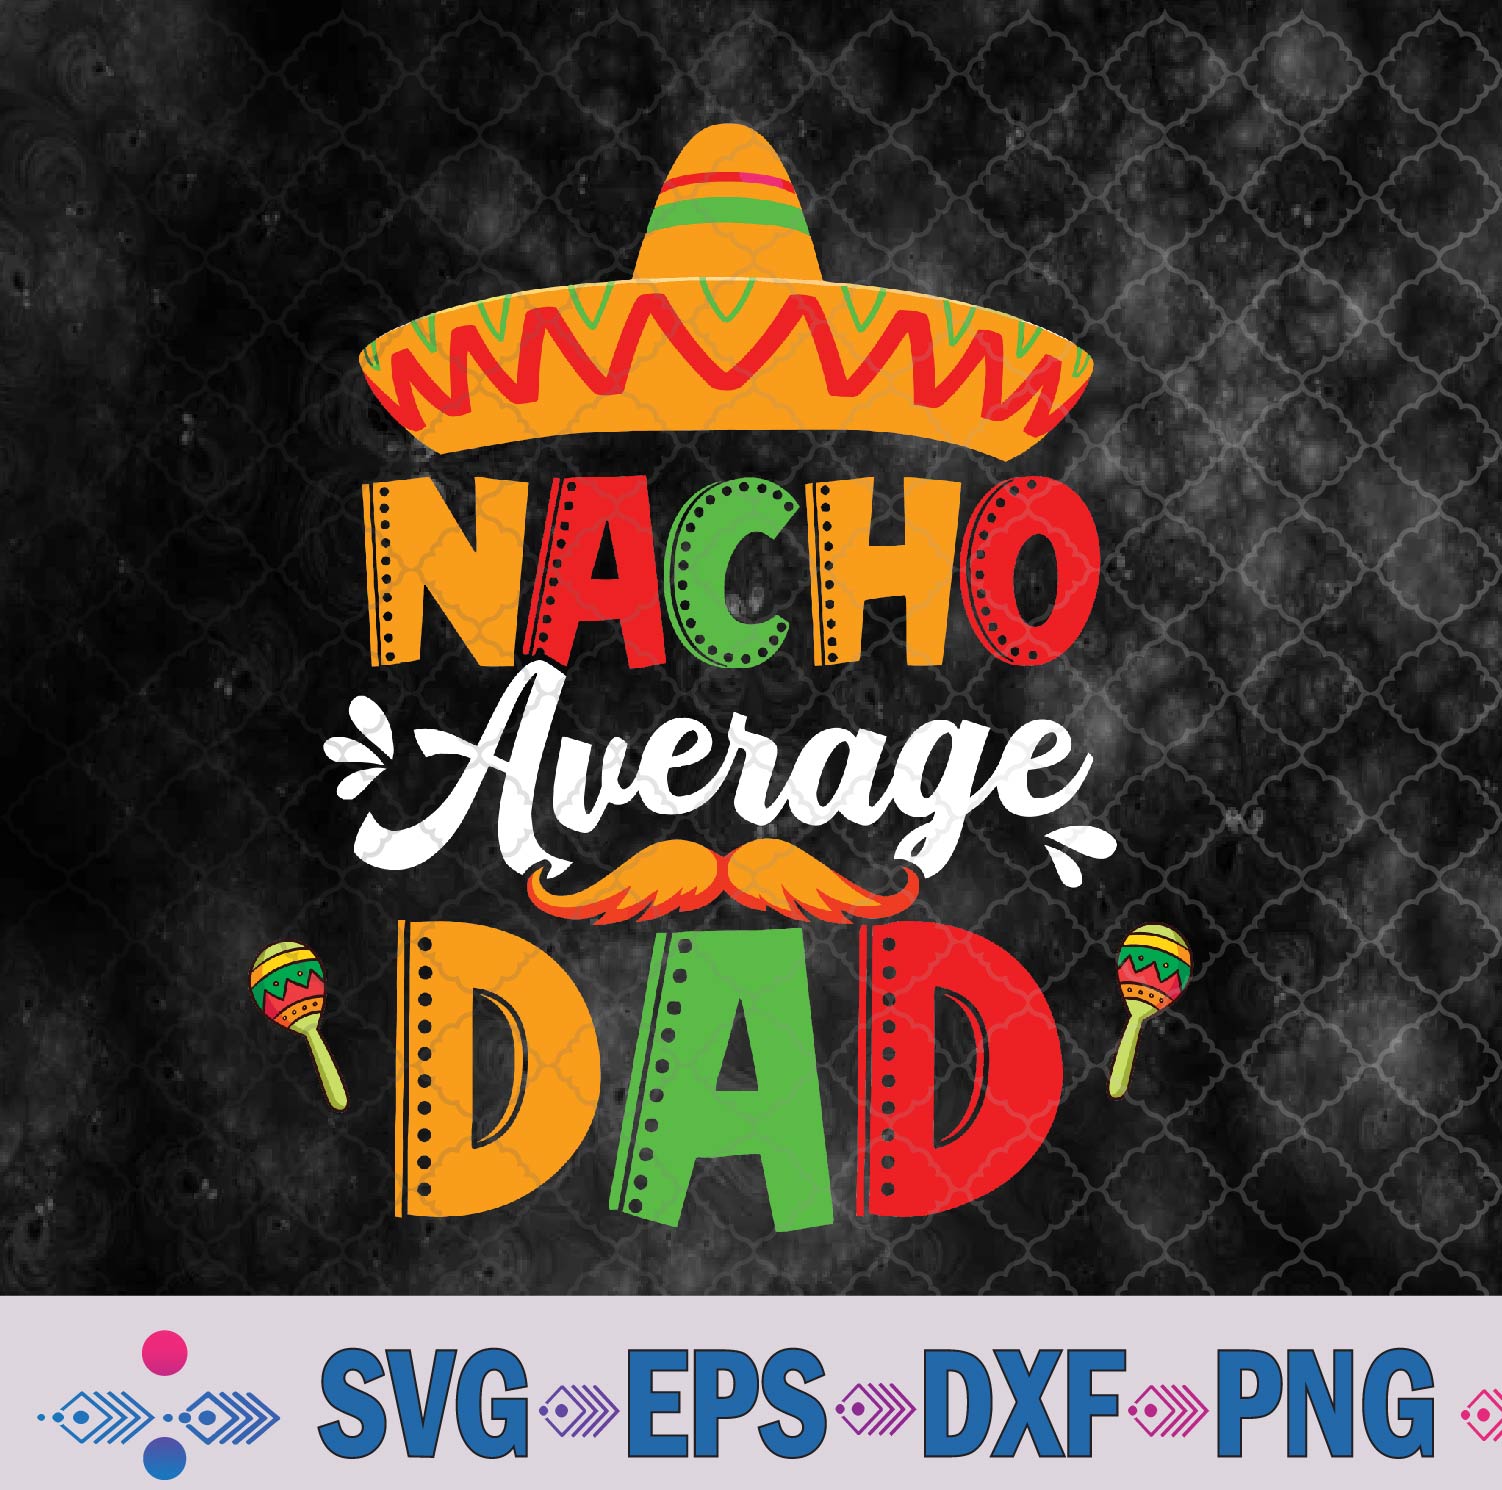 Cinco De Mayo Mexican Fiesta 5 De Mayo Svg, Eps, Png, Dxf, Digital Download